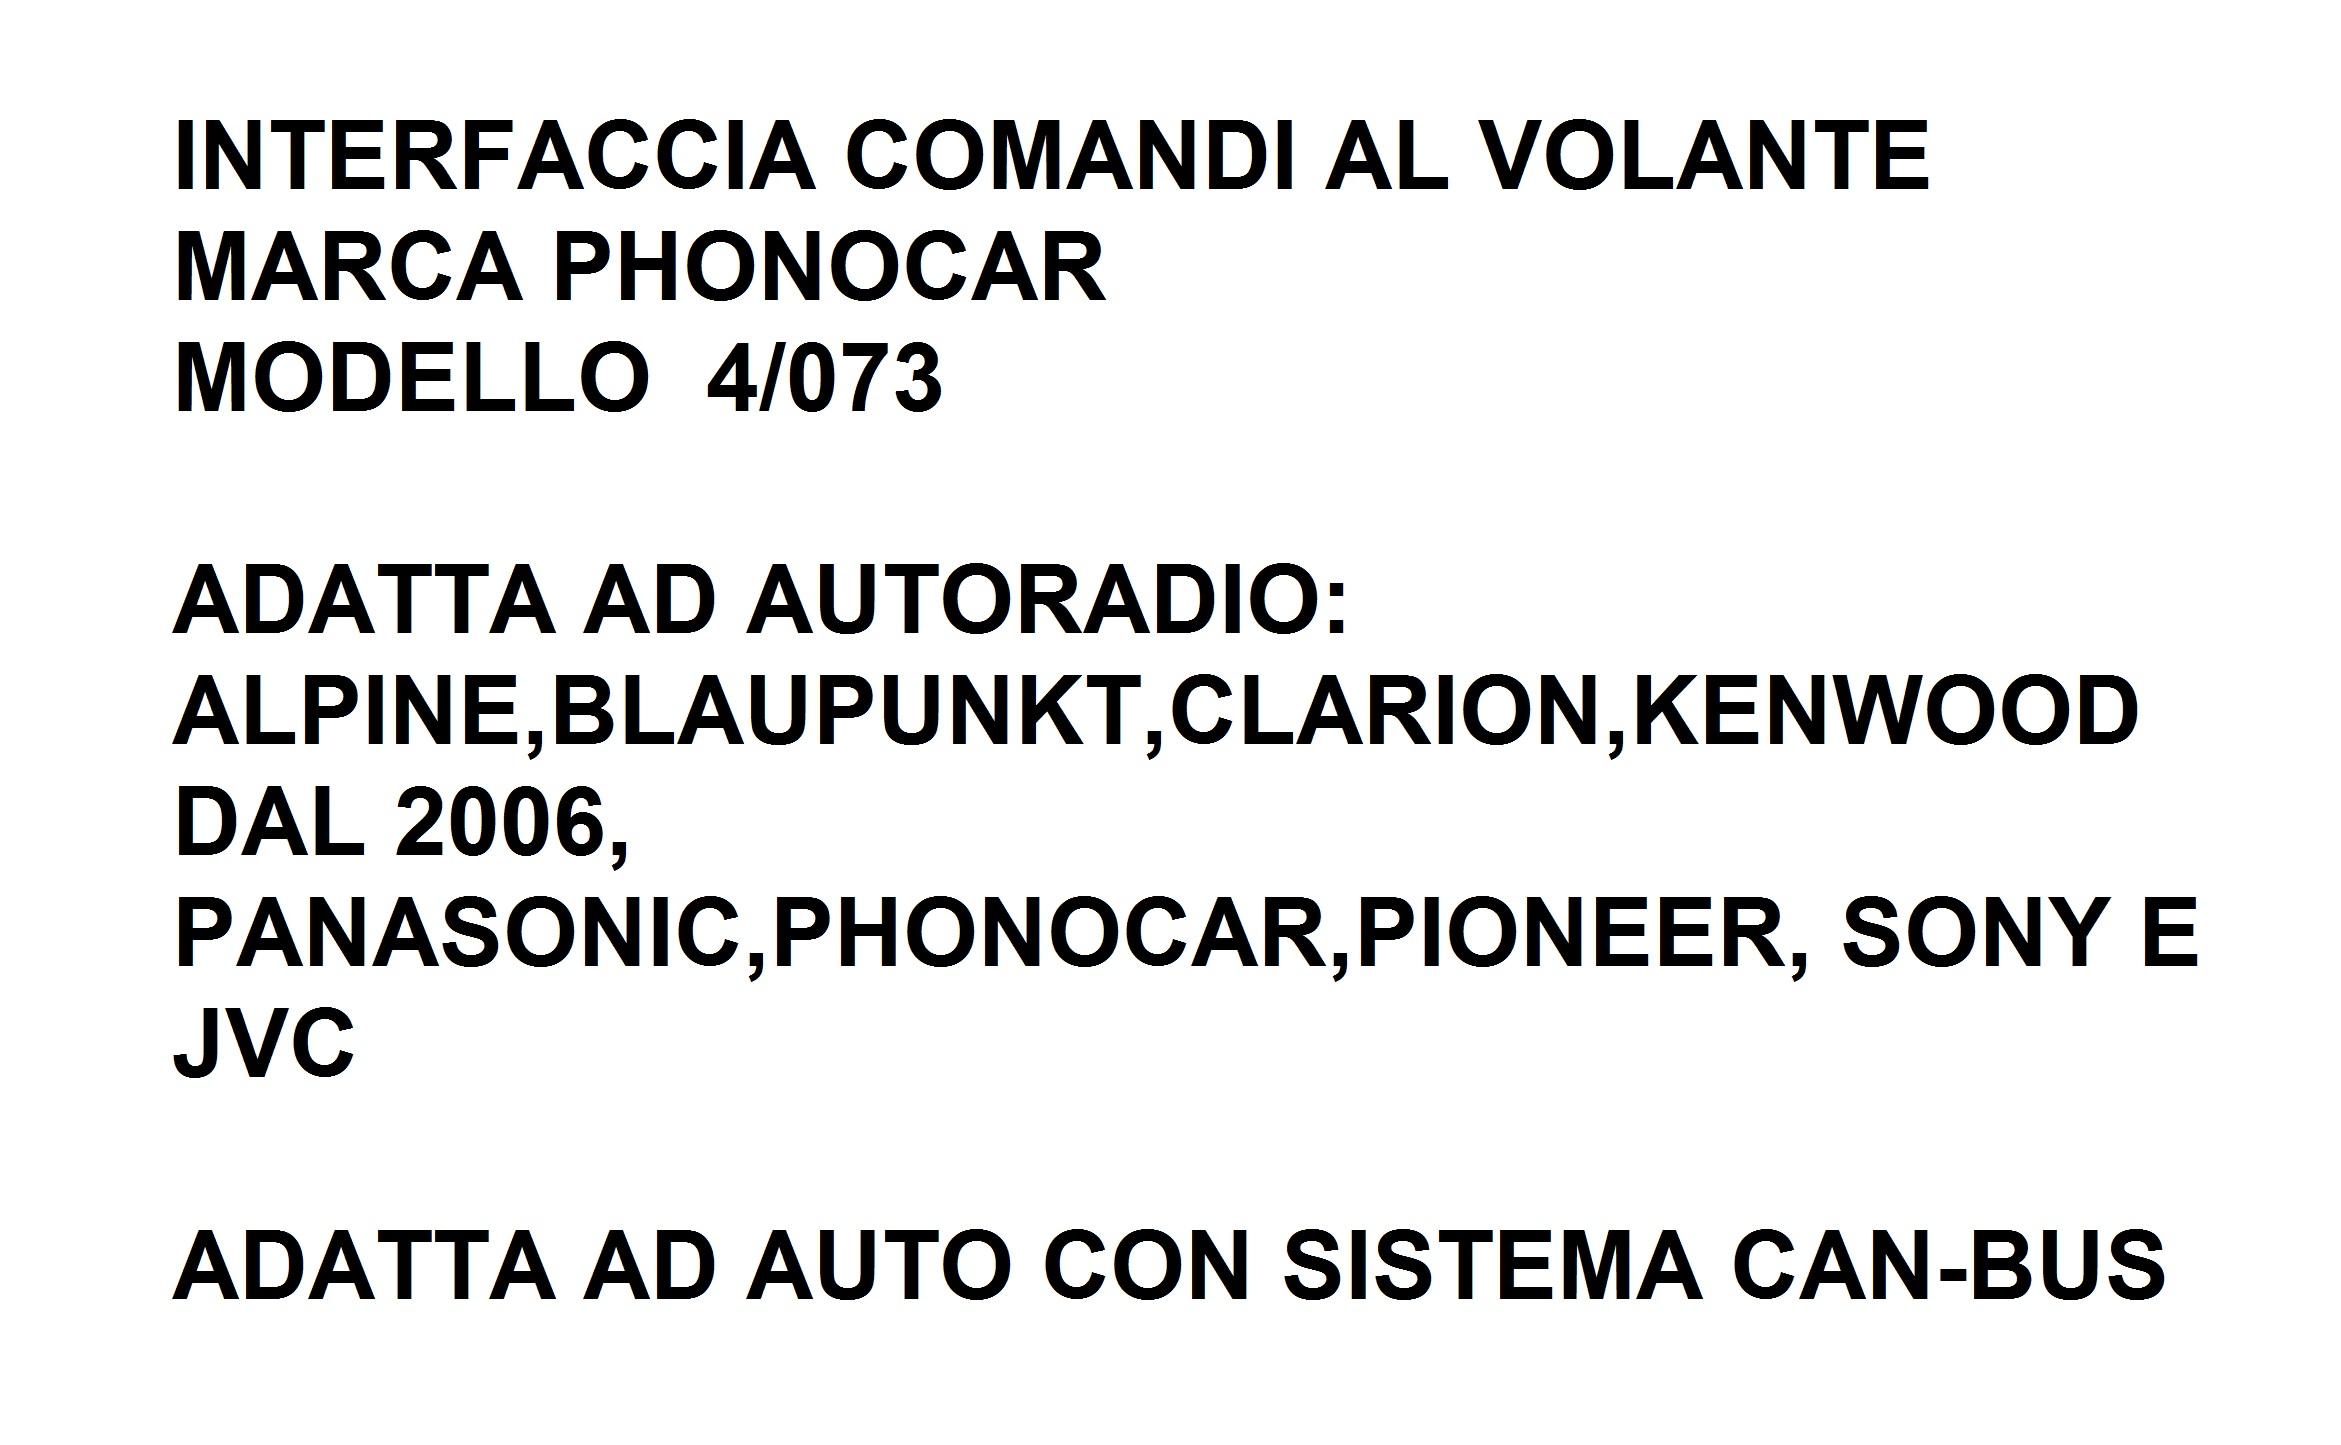 9550 - VOLVO XC90 DAL 2007 INTERFACCIA CAN-BUS&COMANDI AL VOLANTE 4/073 PHONOCAR